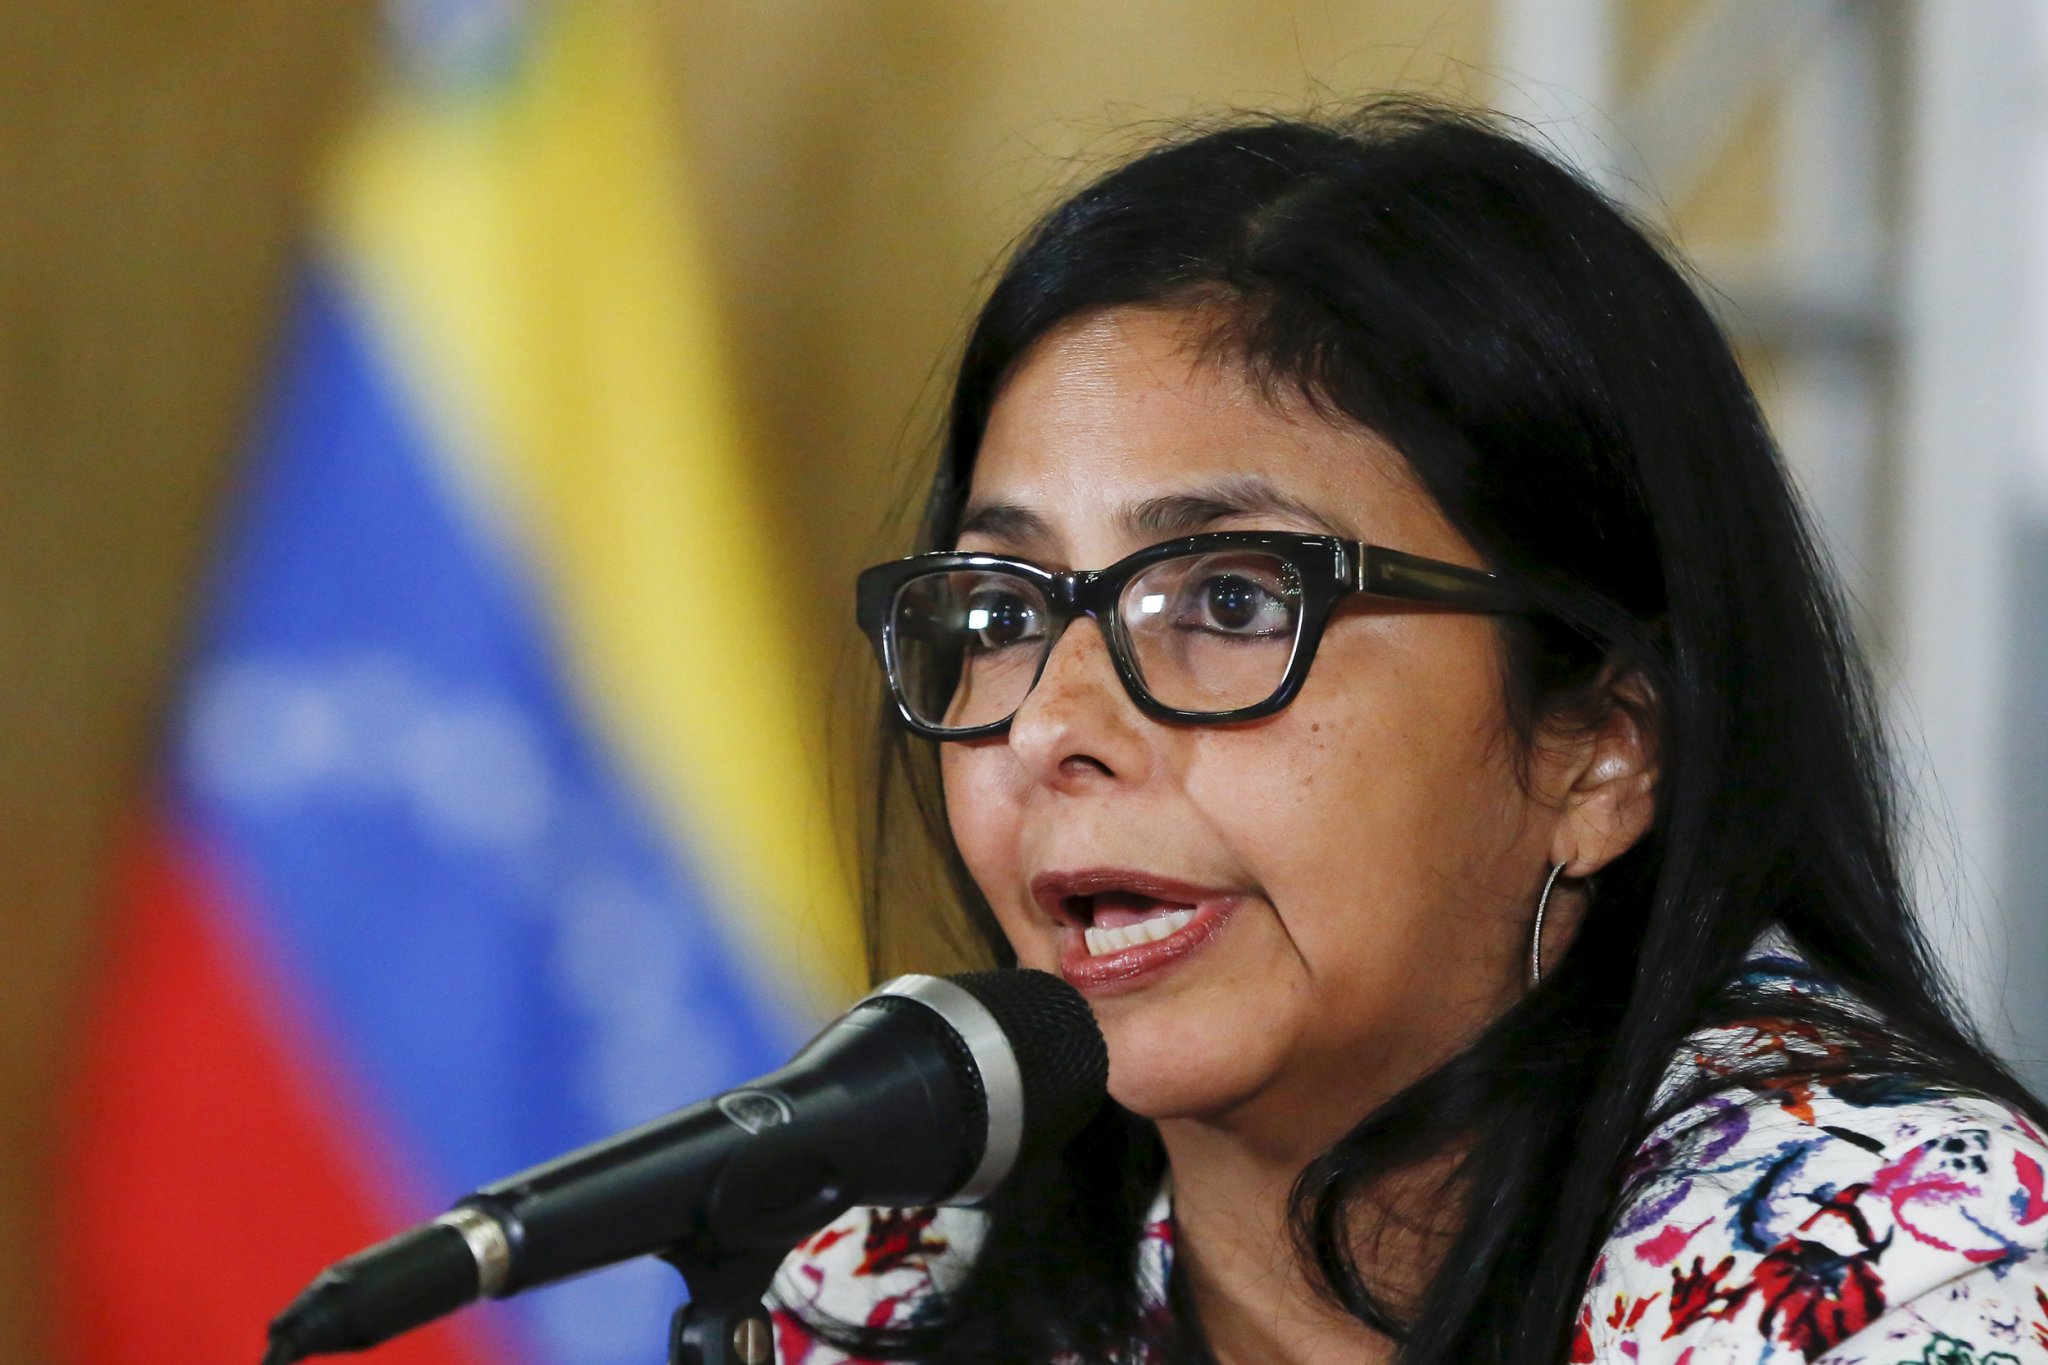 La ministra destacó que por esta razón el presidente Maduro dictó este viernes un decreto de excepción “justamente para proteger al país de esas pretensiones intervencionistas”.